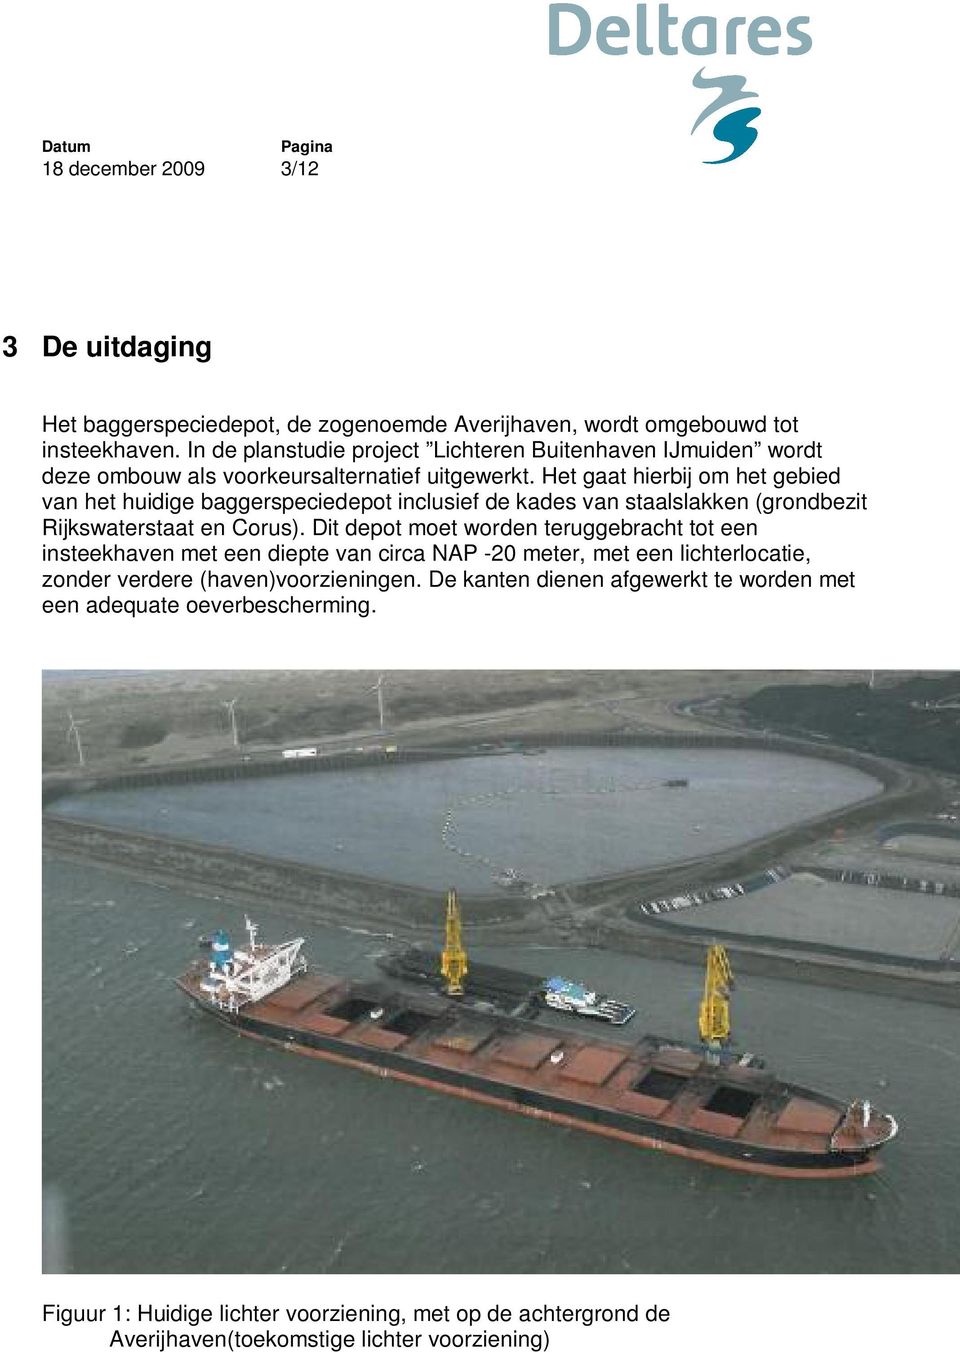 Het gaat hierbij om het gebied van het huidige baggerspeciedepot inclusief de kades van staalslakken (grondbezit Rijkswaterstaat en Corus).